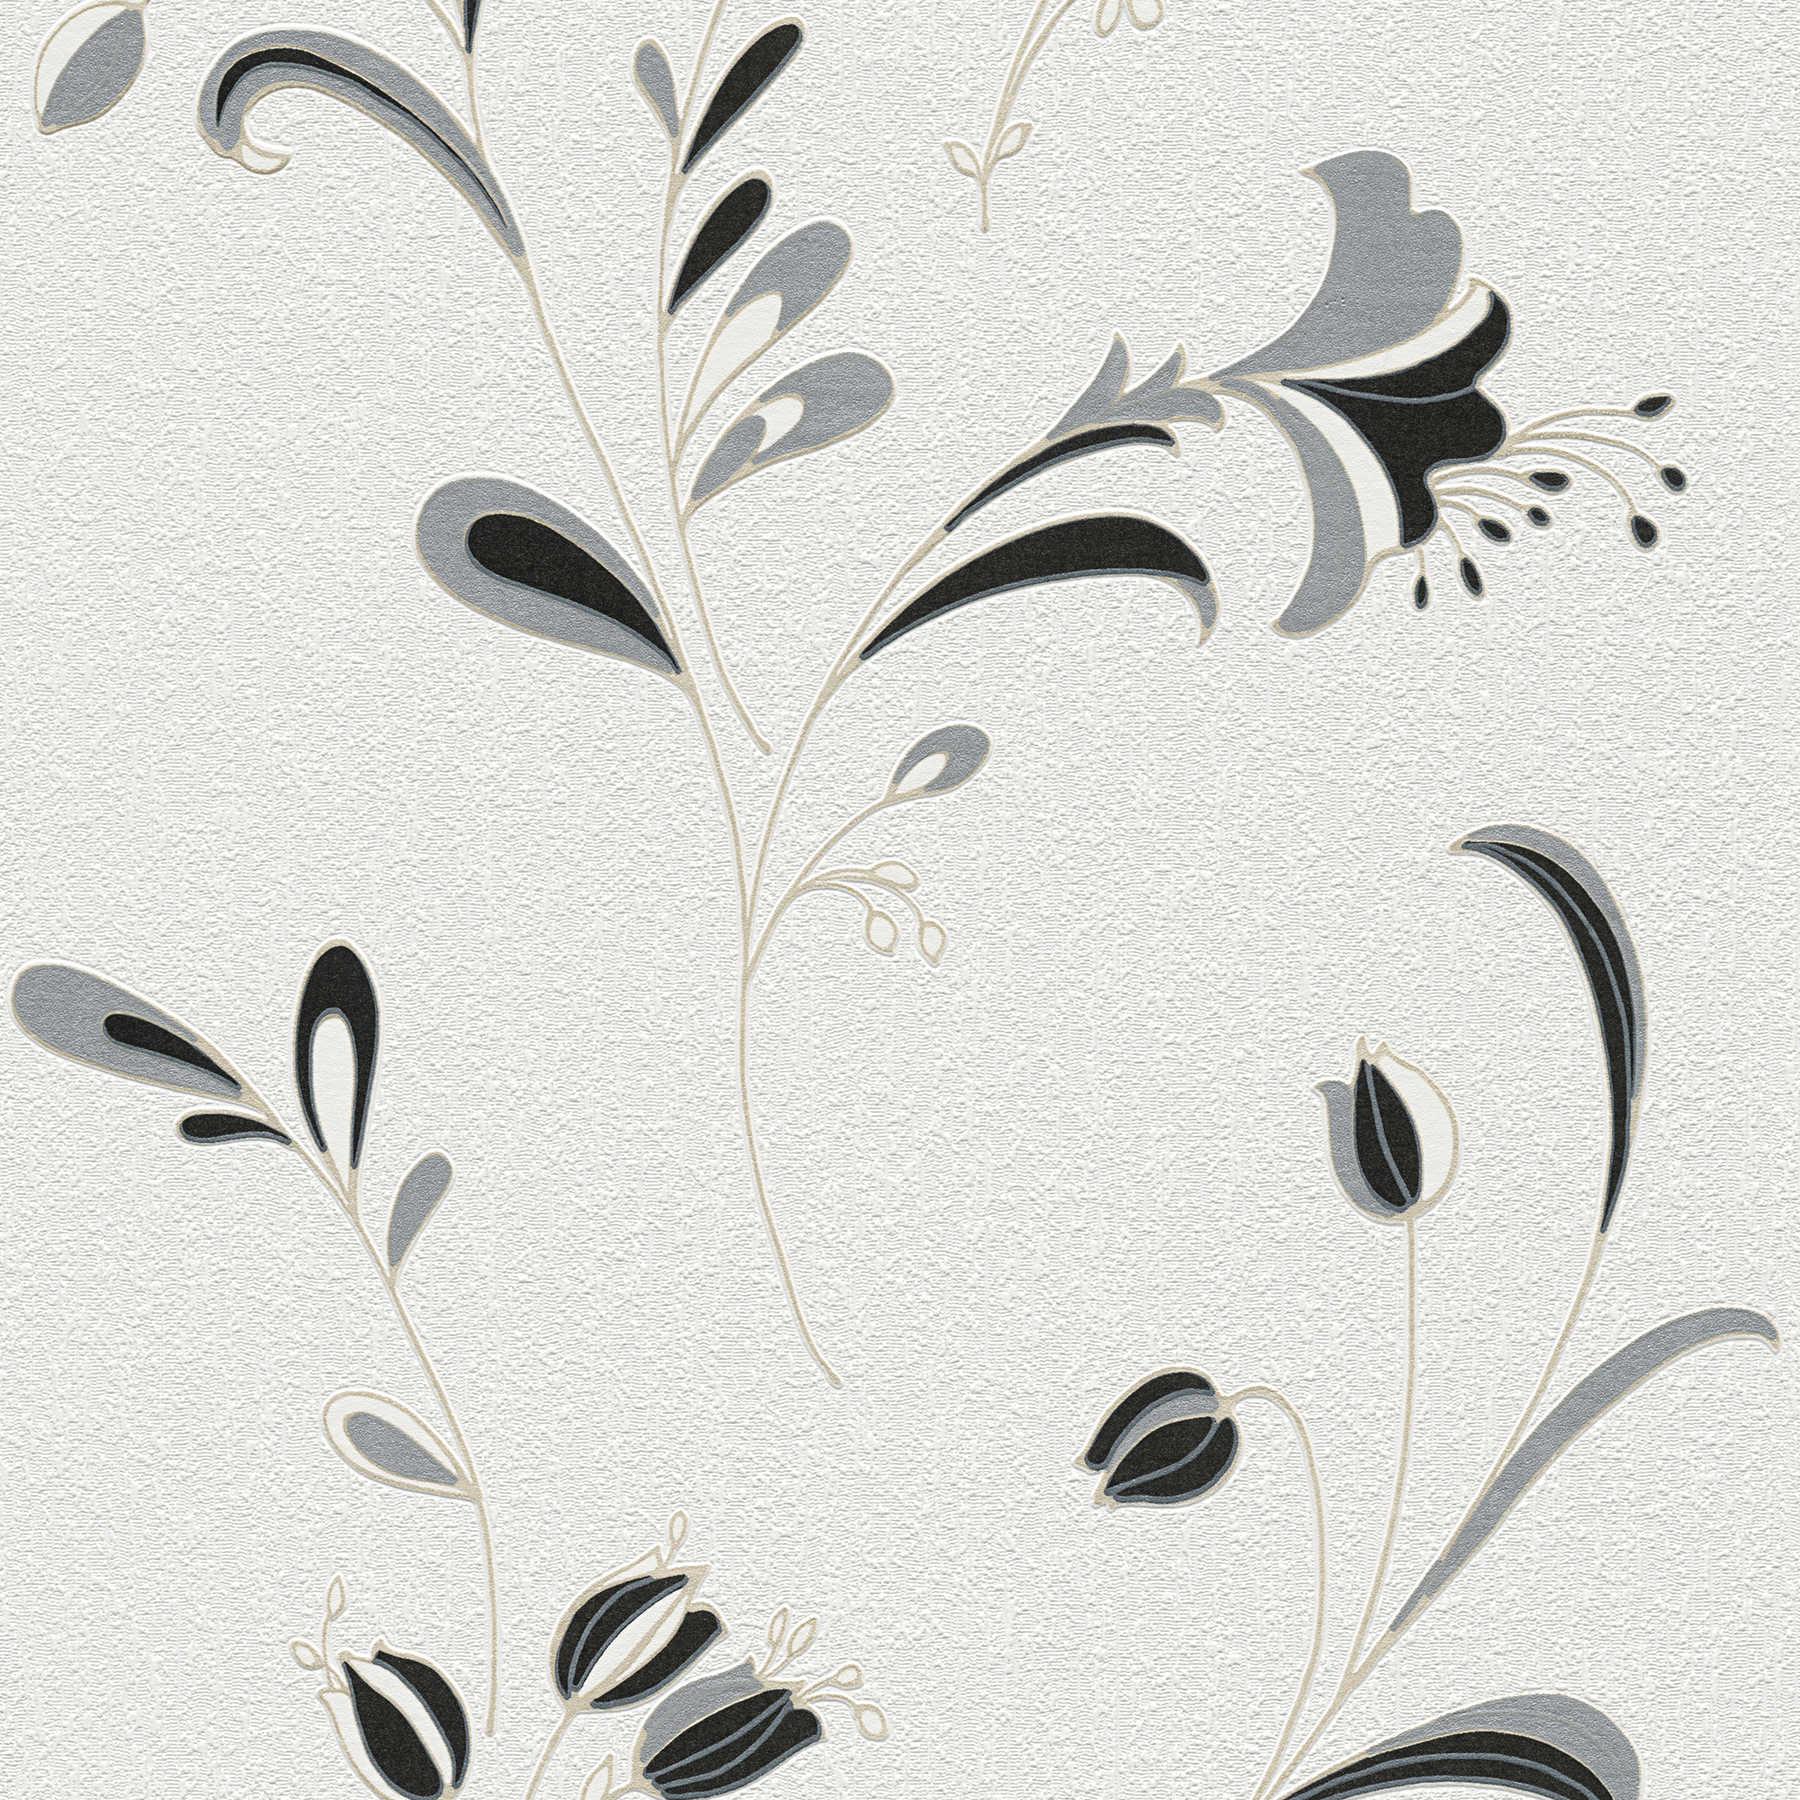 Papier peint motif fleurs, accents argentés & motifs structurés - noir, blanc, argenté
